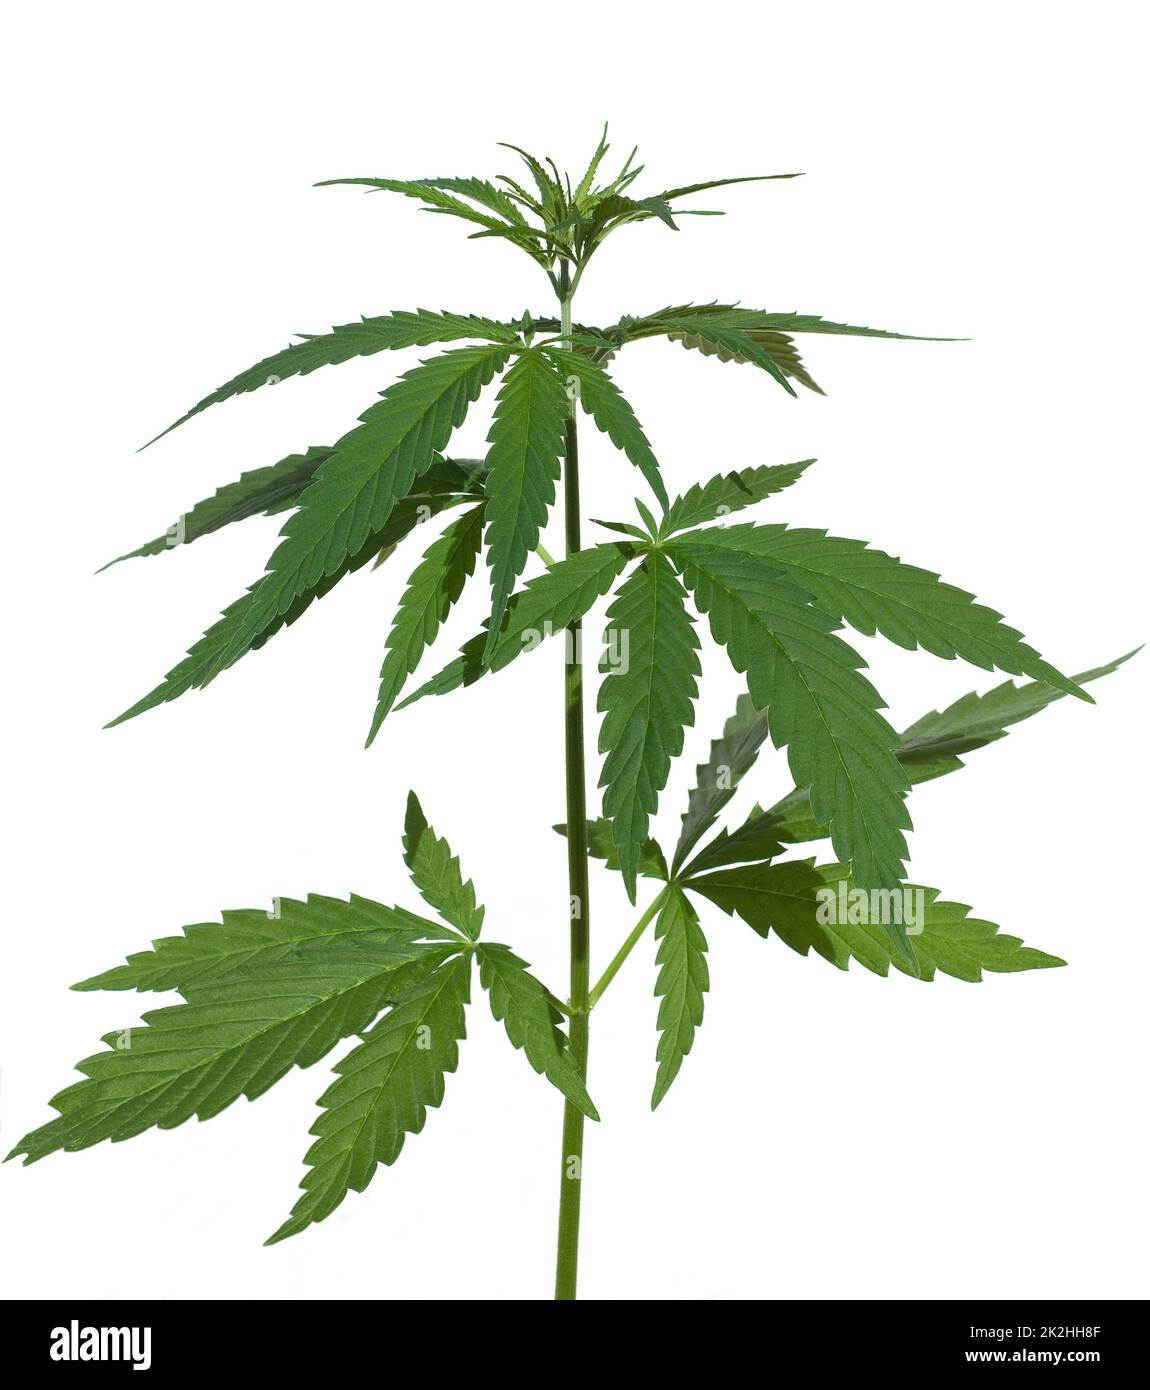 Hanf, cannabis indica ist eine Nutz- und Rauschgiftpflanze die auch in der Medzin eingesetzt wird. Hemp, cannabis indica is a useful and narcotic plan Stock Photo